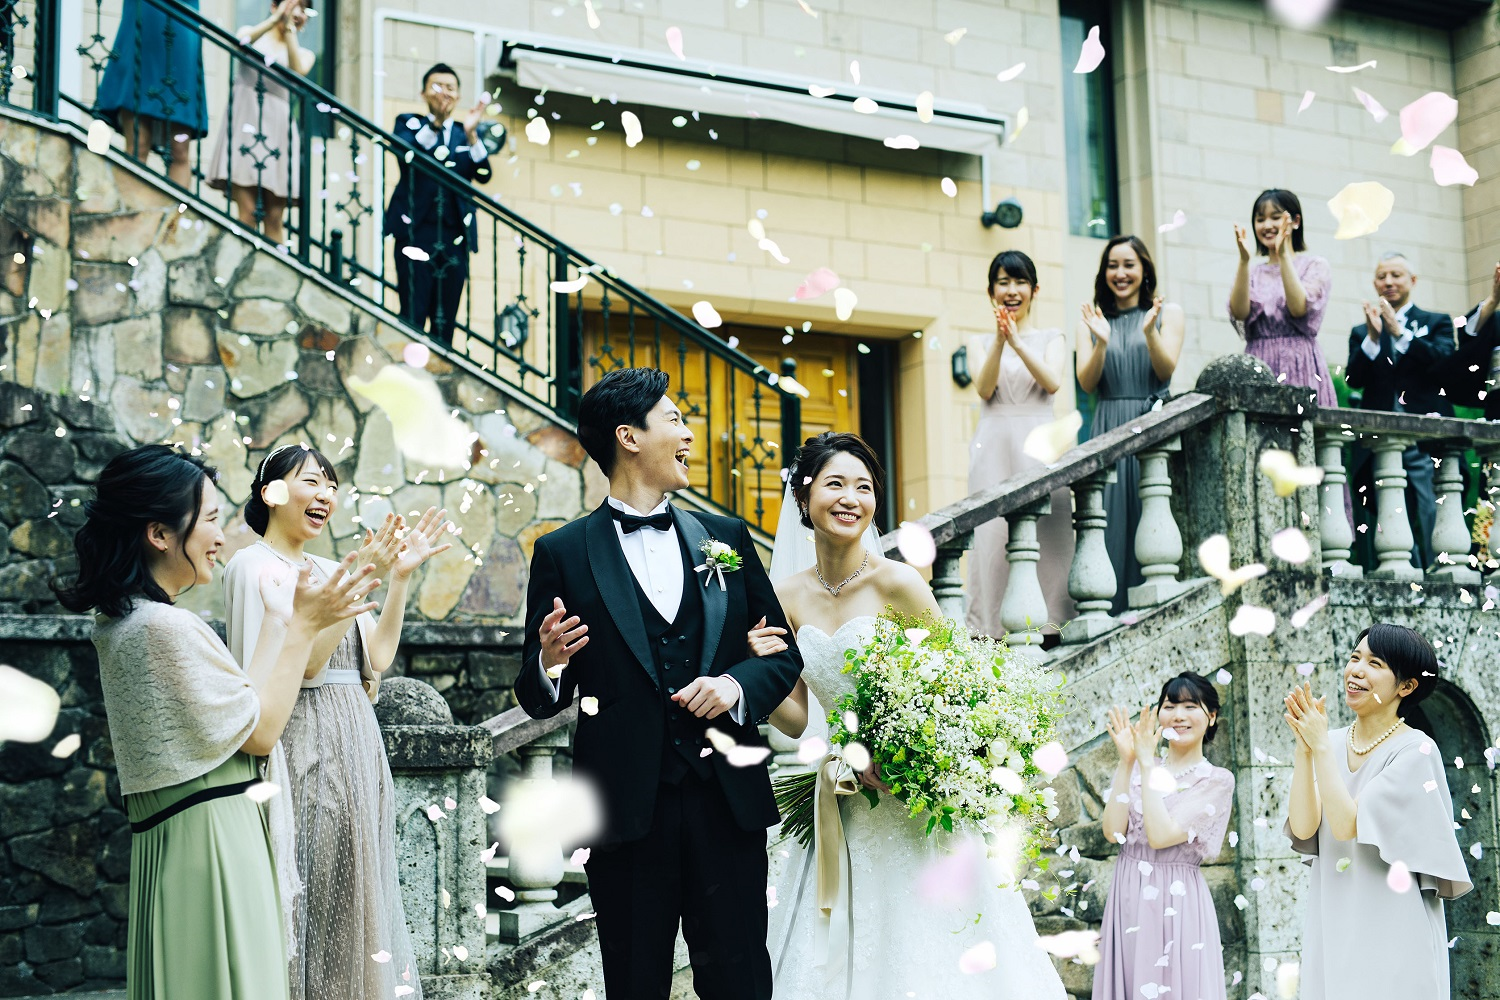 ブライダルフェアとは 当日の流れから特徴 メリットまとめ 東京の結婚式 結婚式場 ホテル椿山荘東京 公式